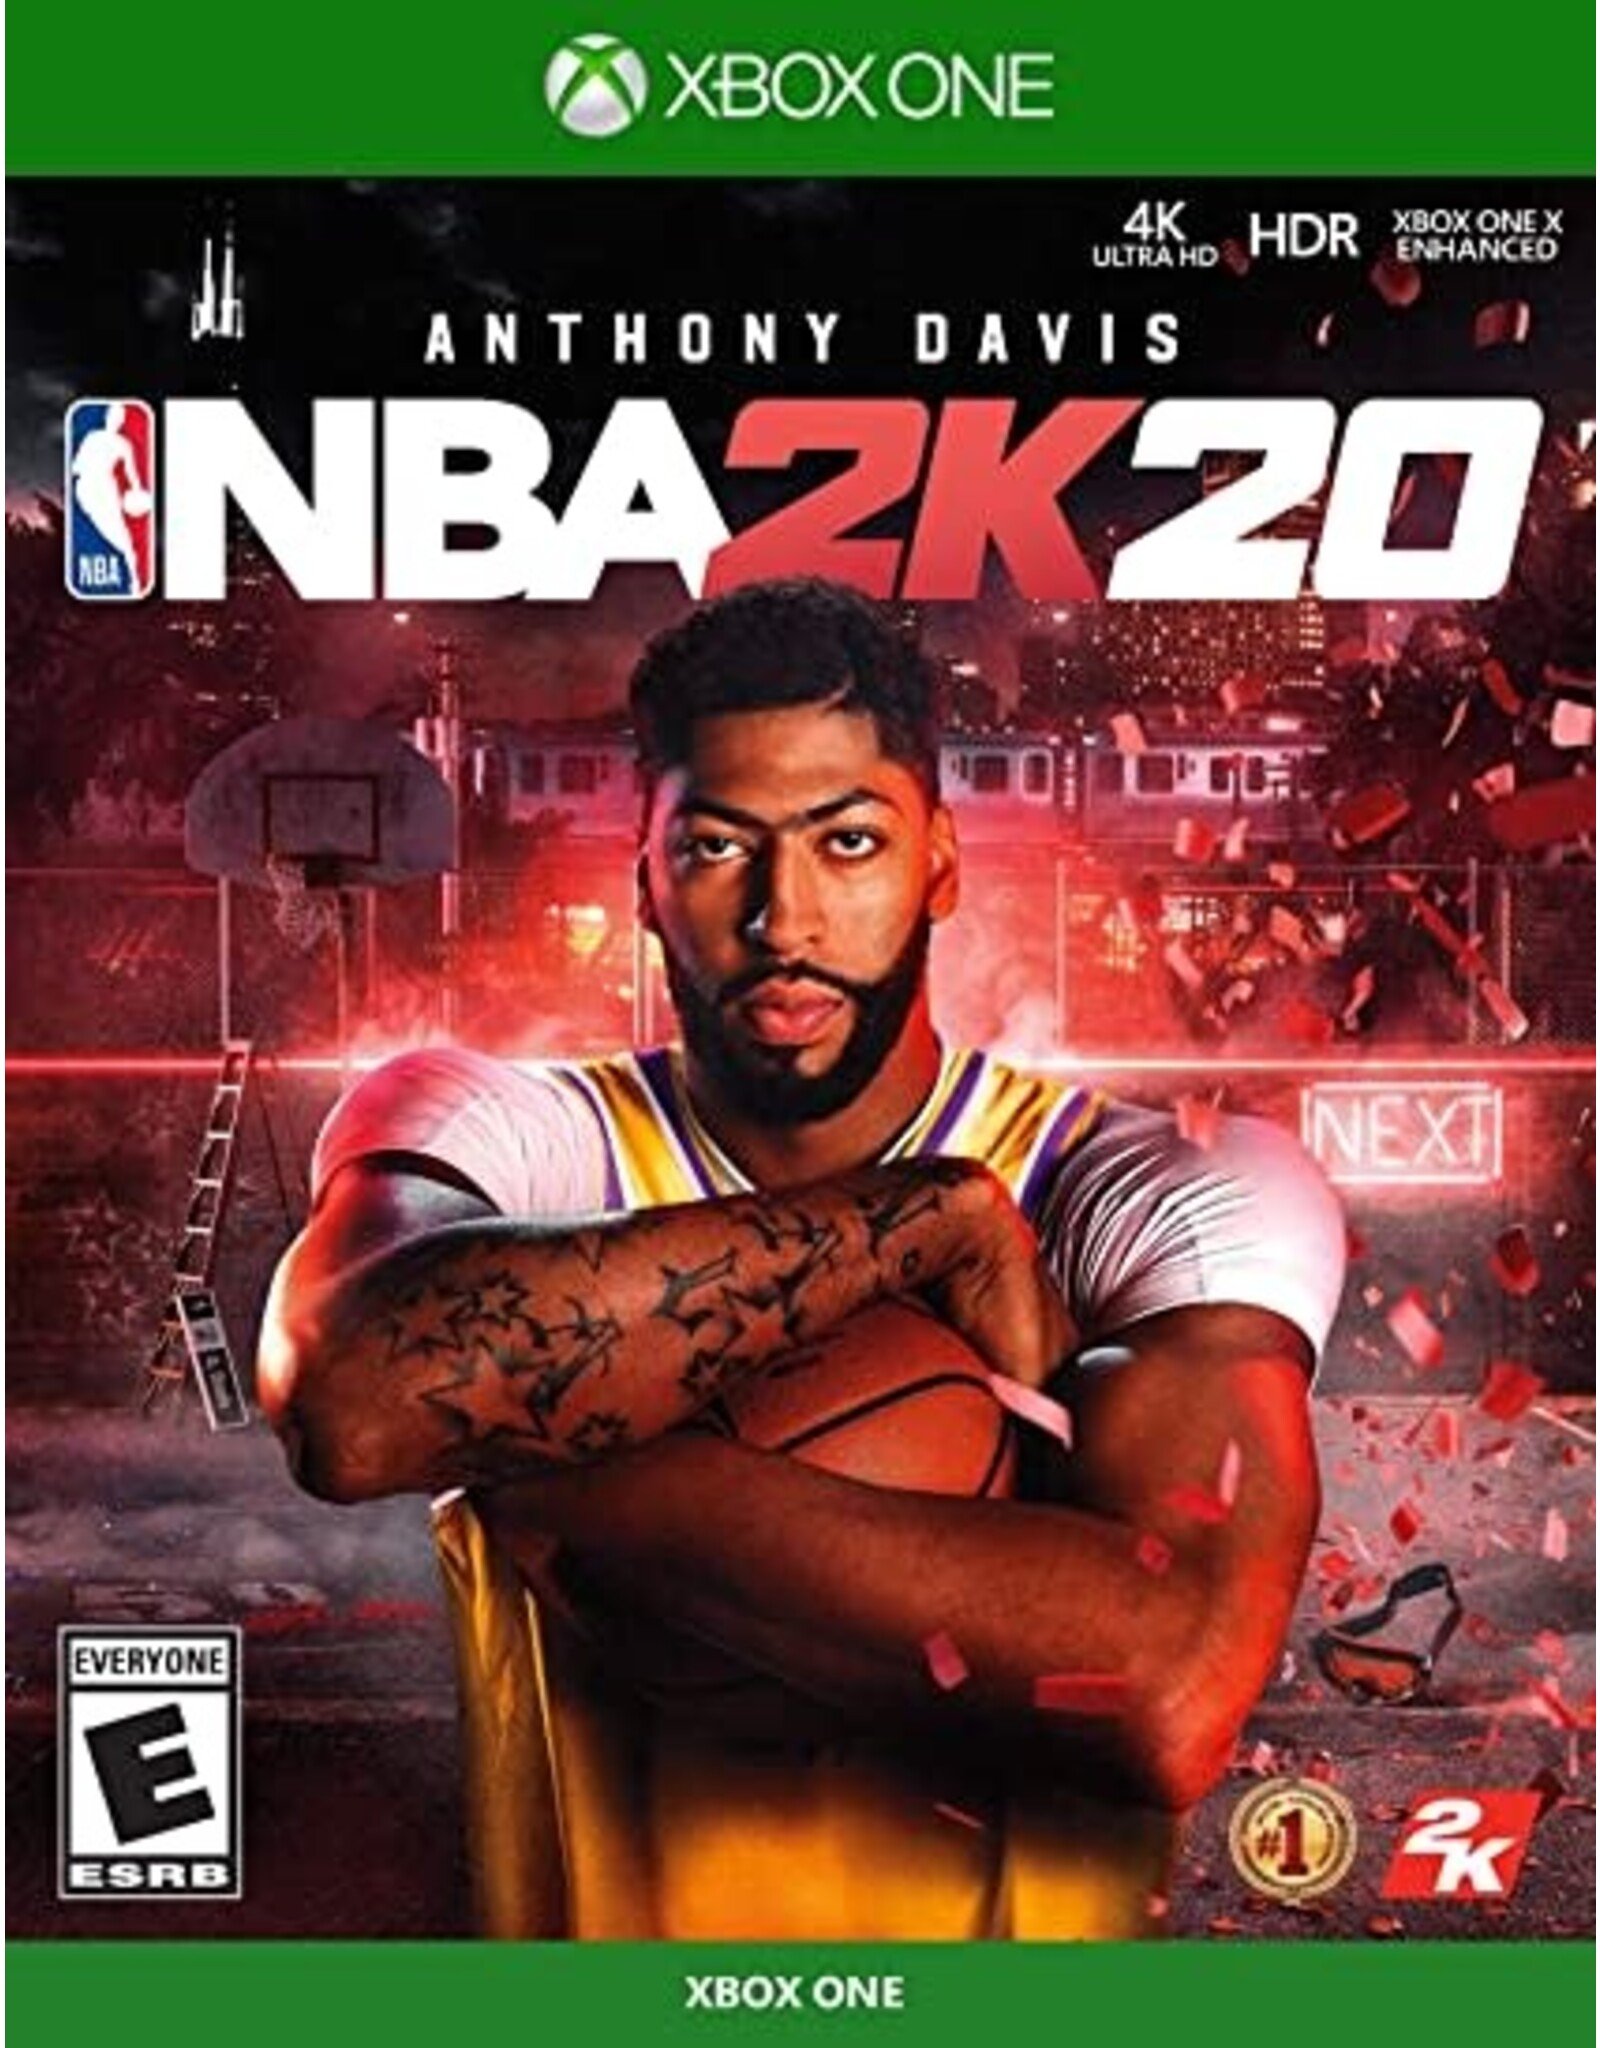 Xbox One NBA 2k20 (Used)